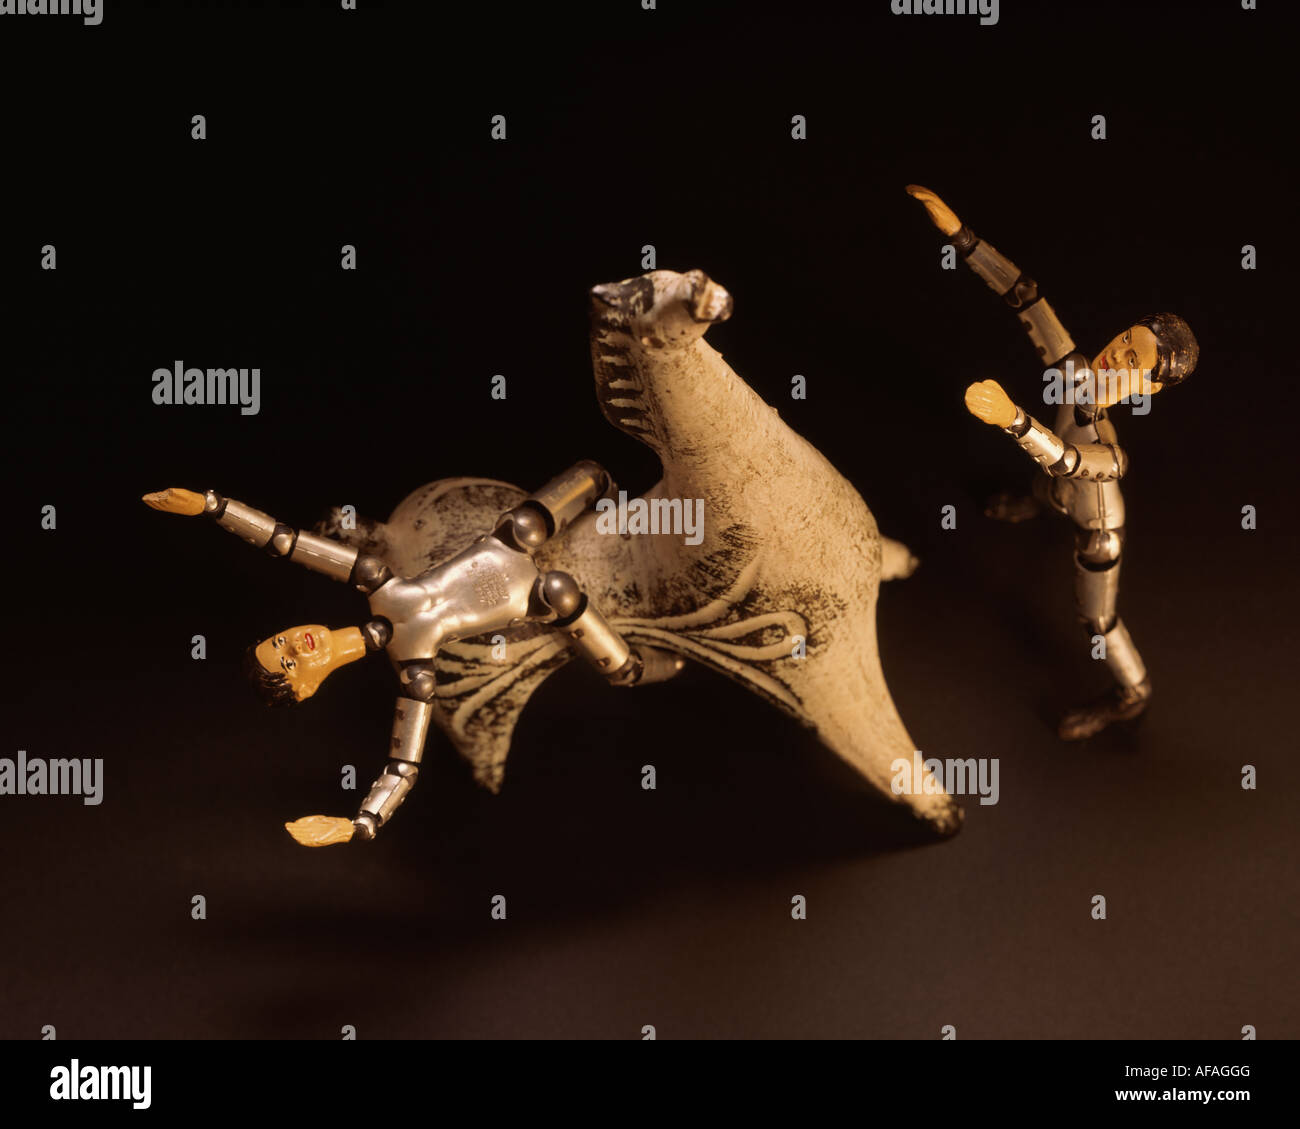 A4 orizzontale colore immagine presa su 4x5 fotocamera. Alta risoluzione scansione flextight. Due fatti a mano maschio svizzero di bambole e la ceramica cavallo. Foto Stock